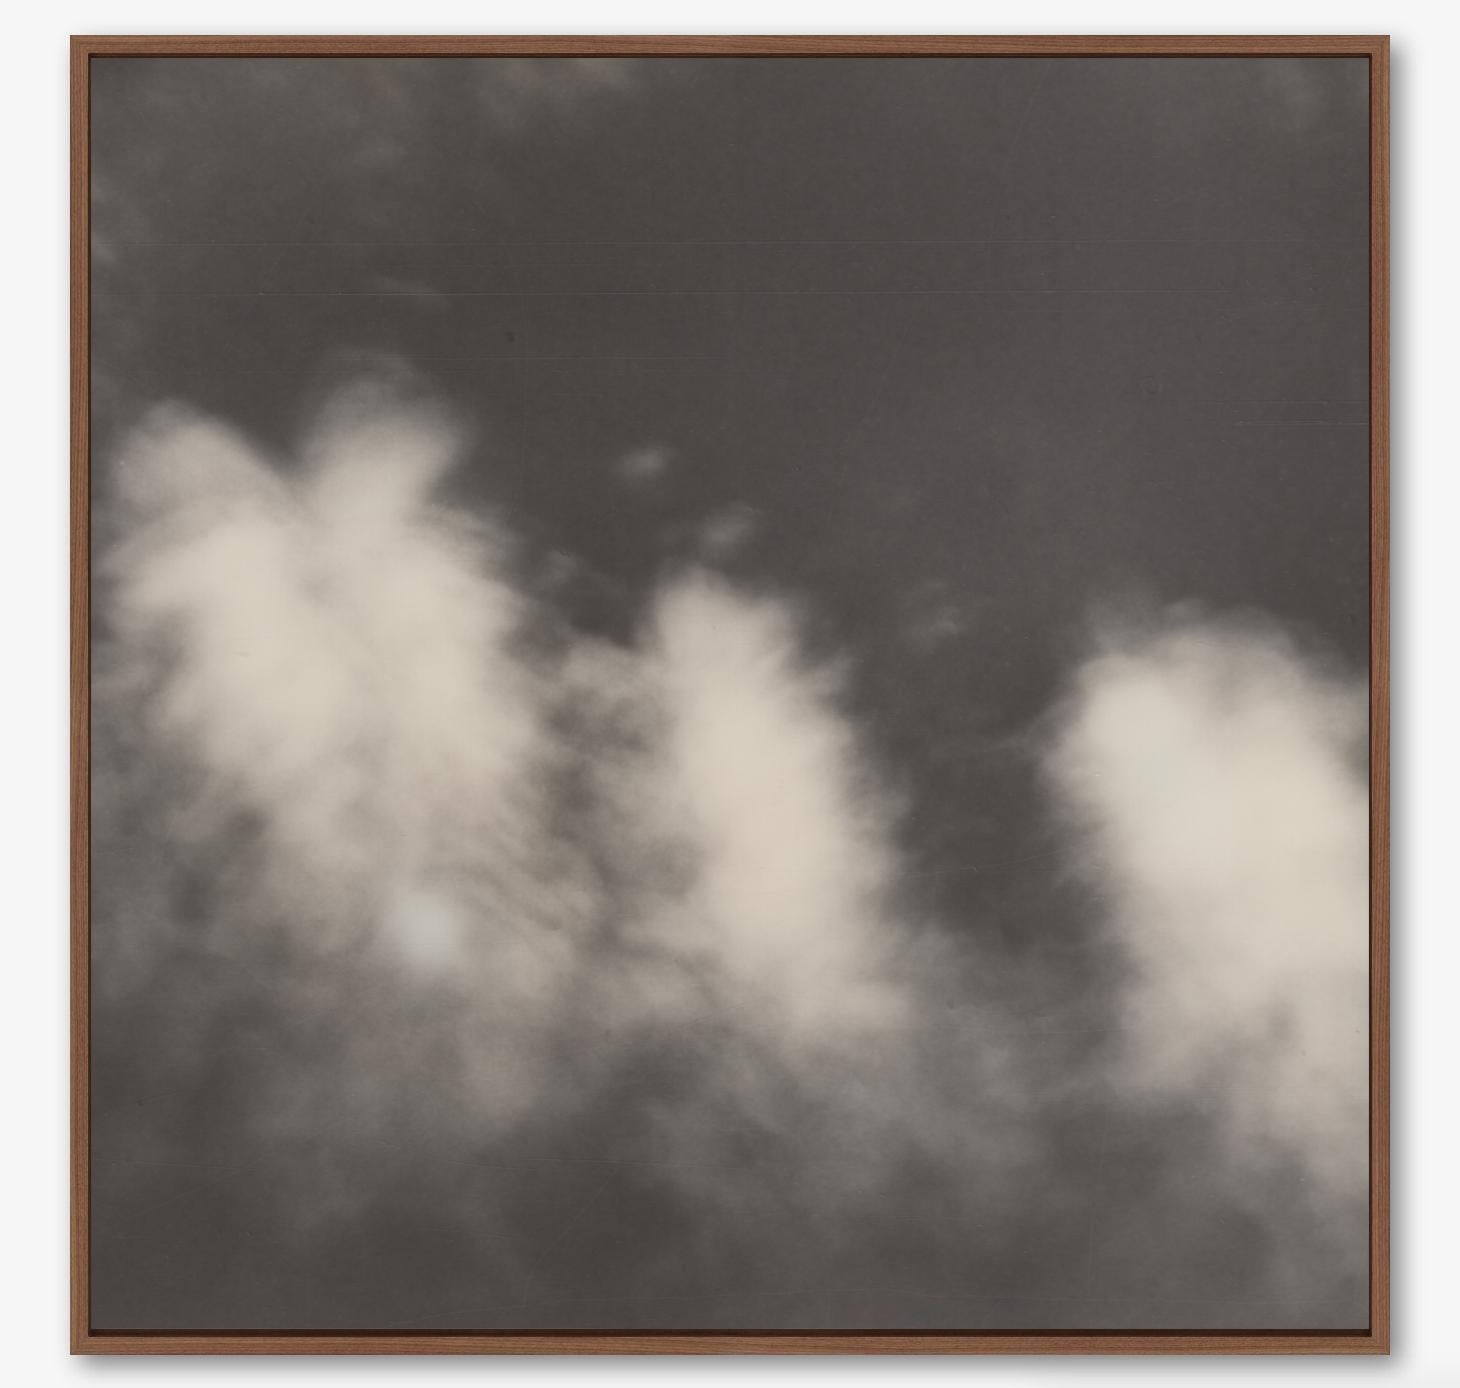 Woods brillants - Impression photographique contemporaine du 21e siècle - Polaroid B/W - Contemporain Print par Pia Clodi